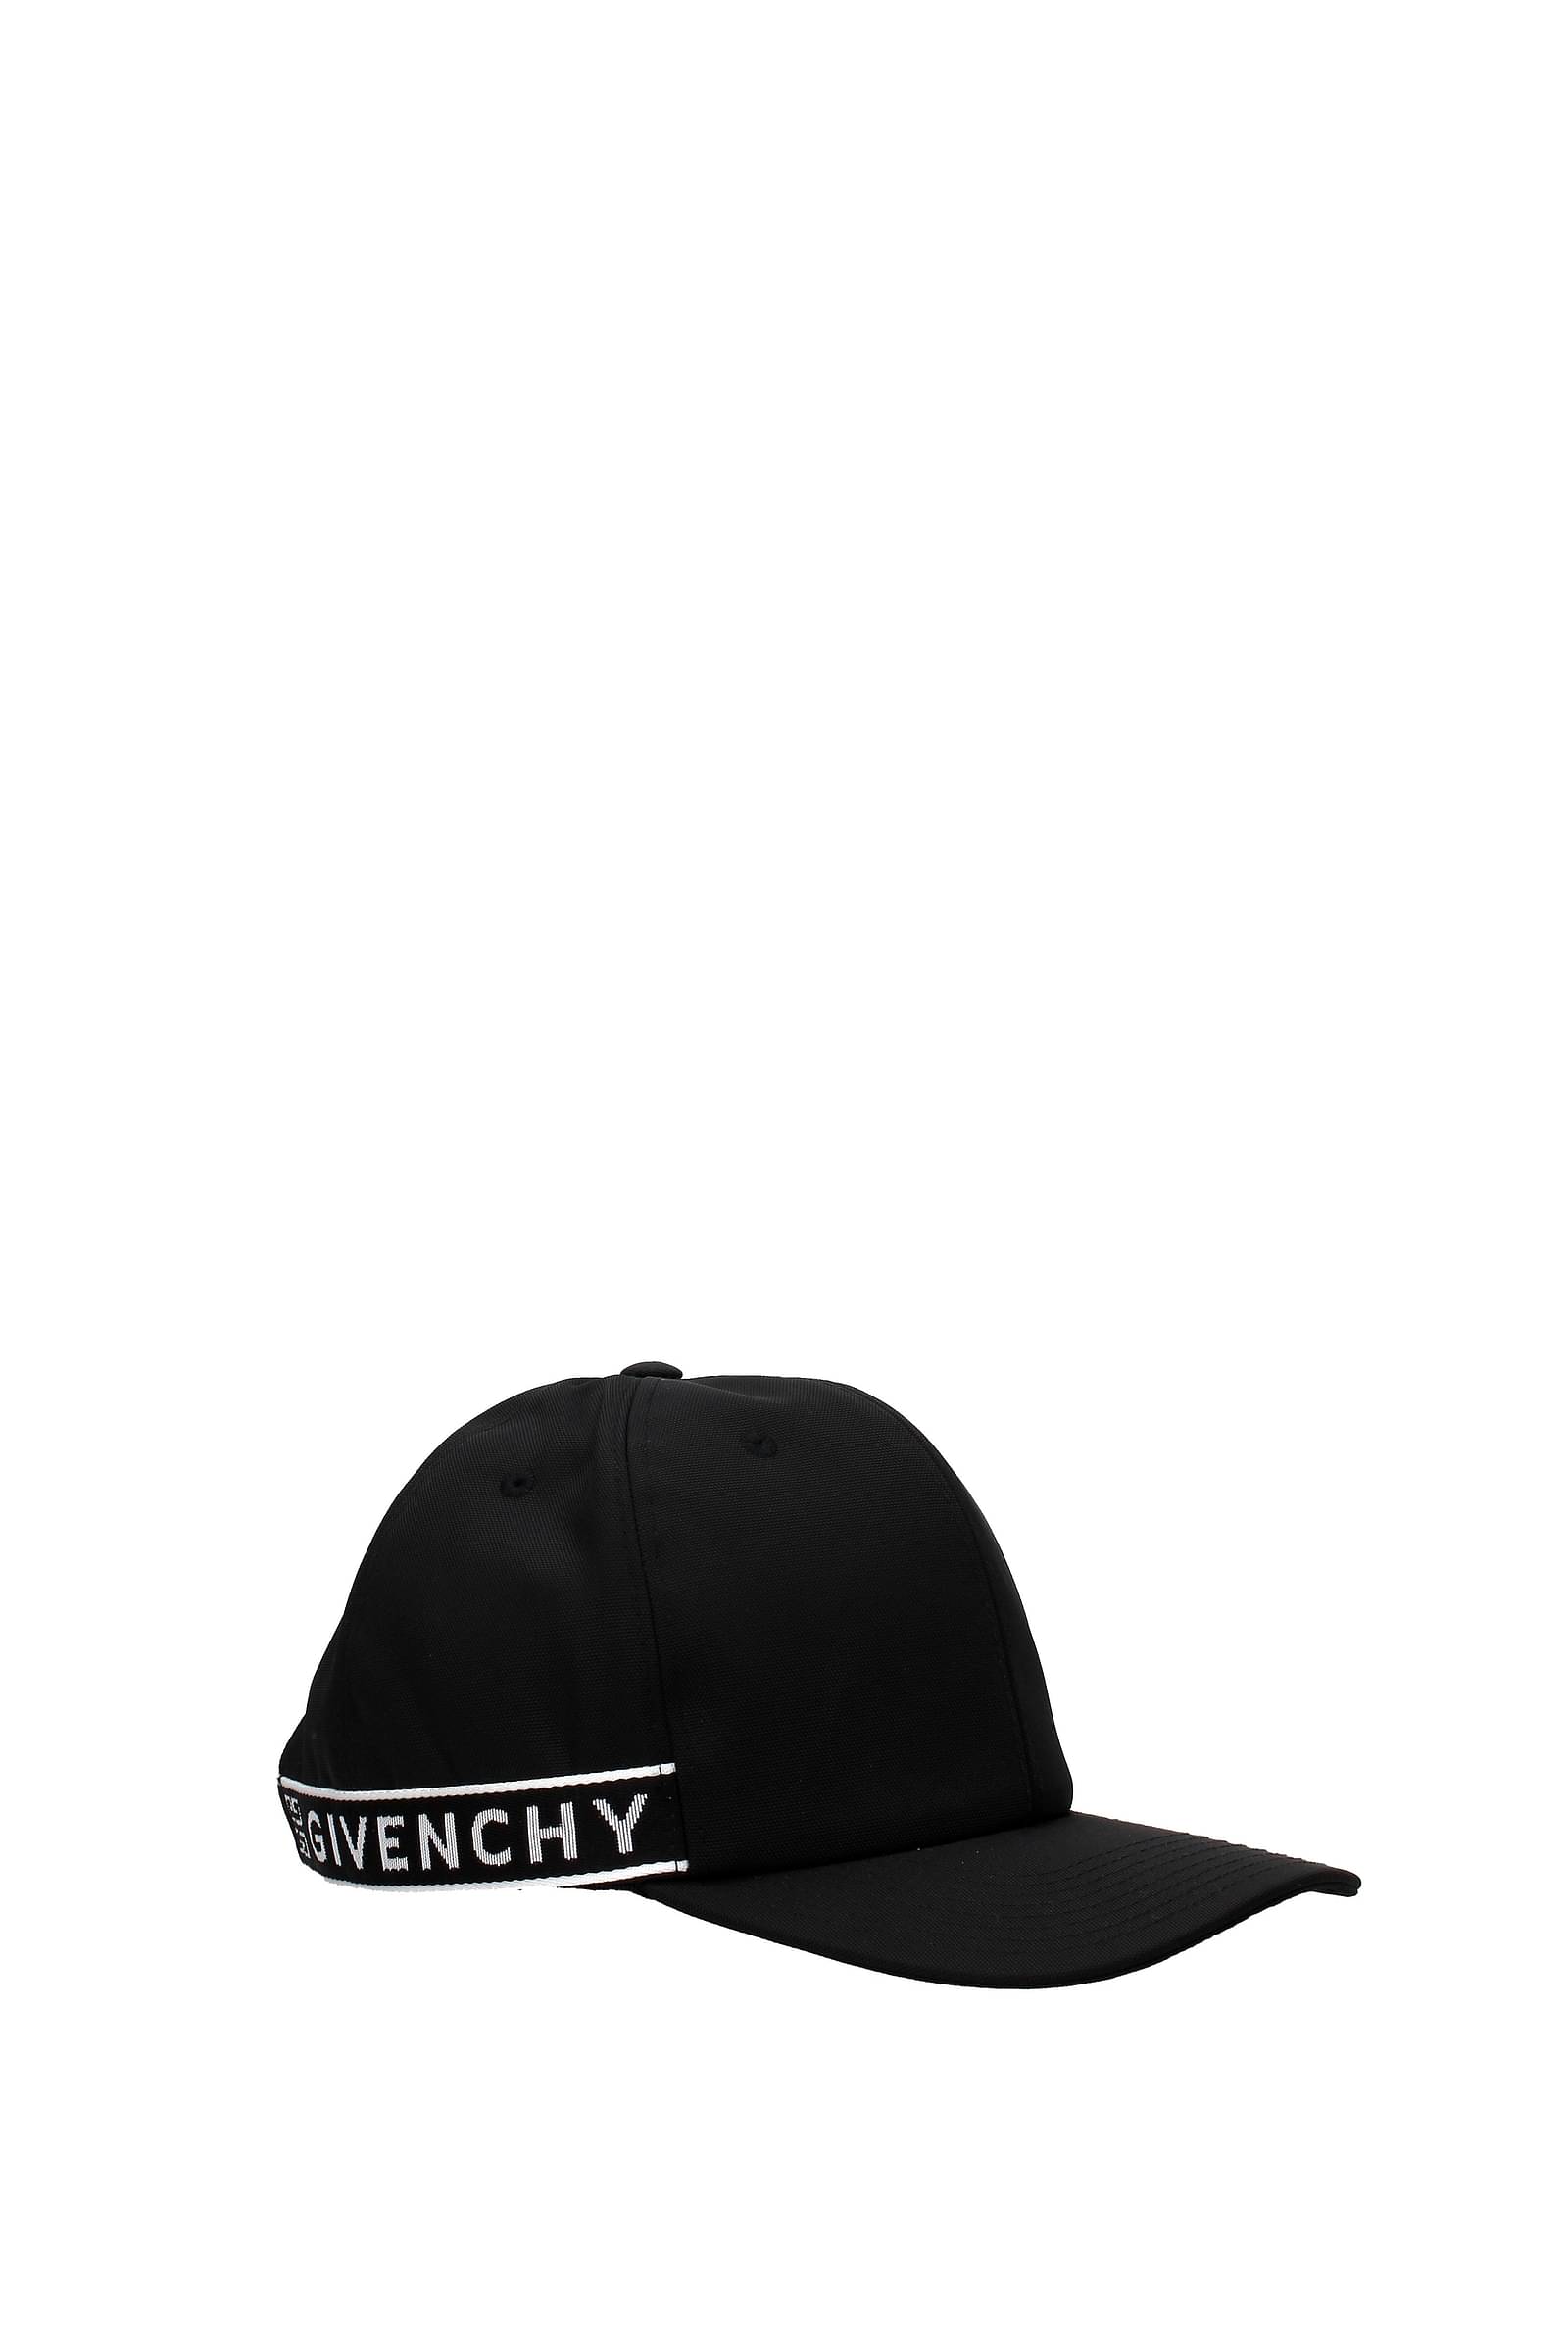 Givenchy Hats Men BPZ003P00P004 Cotton 288€